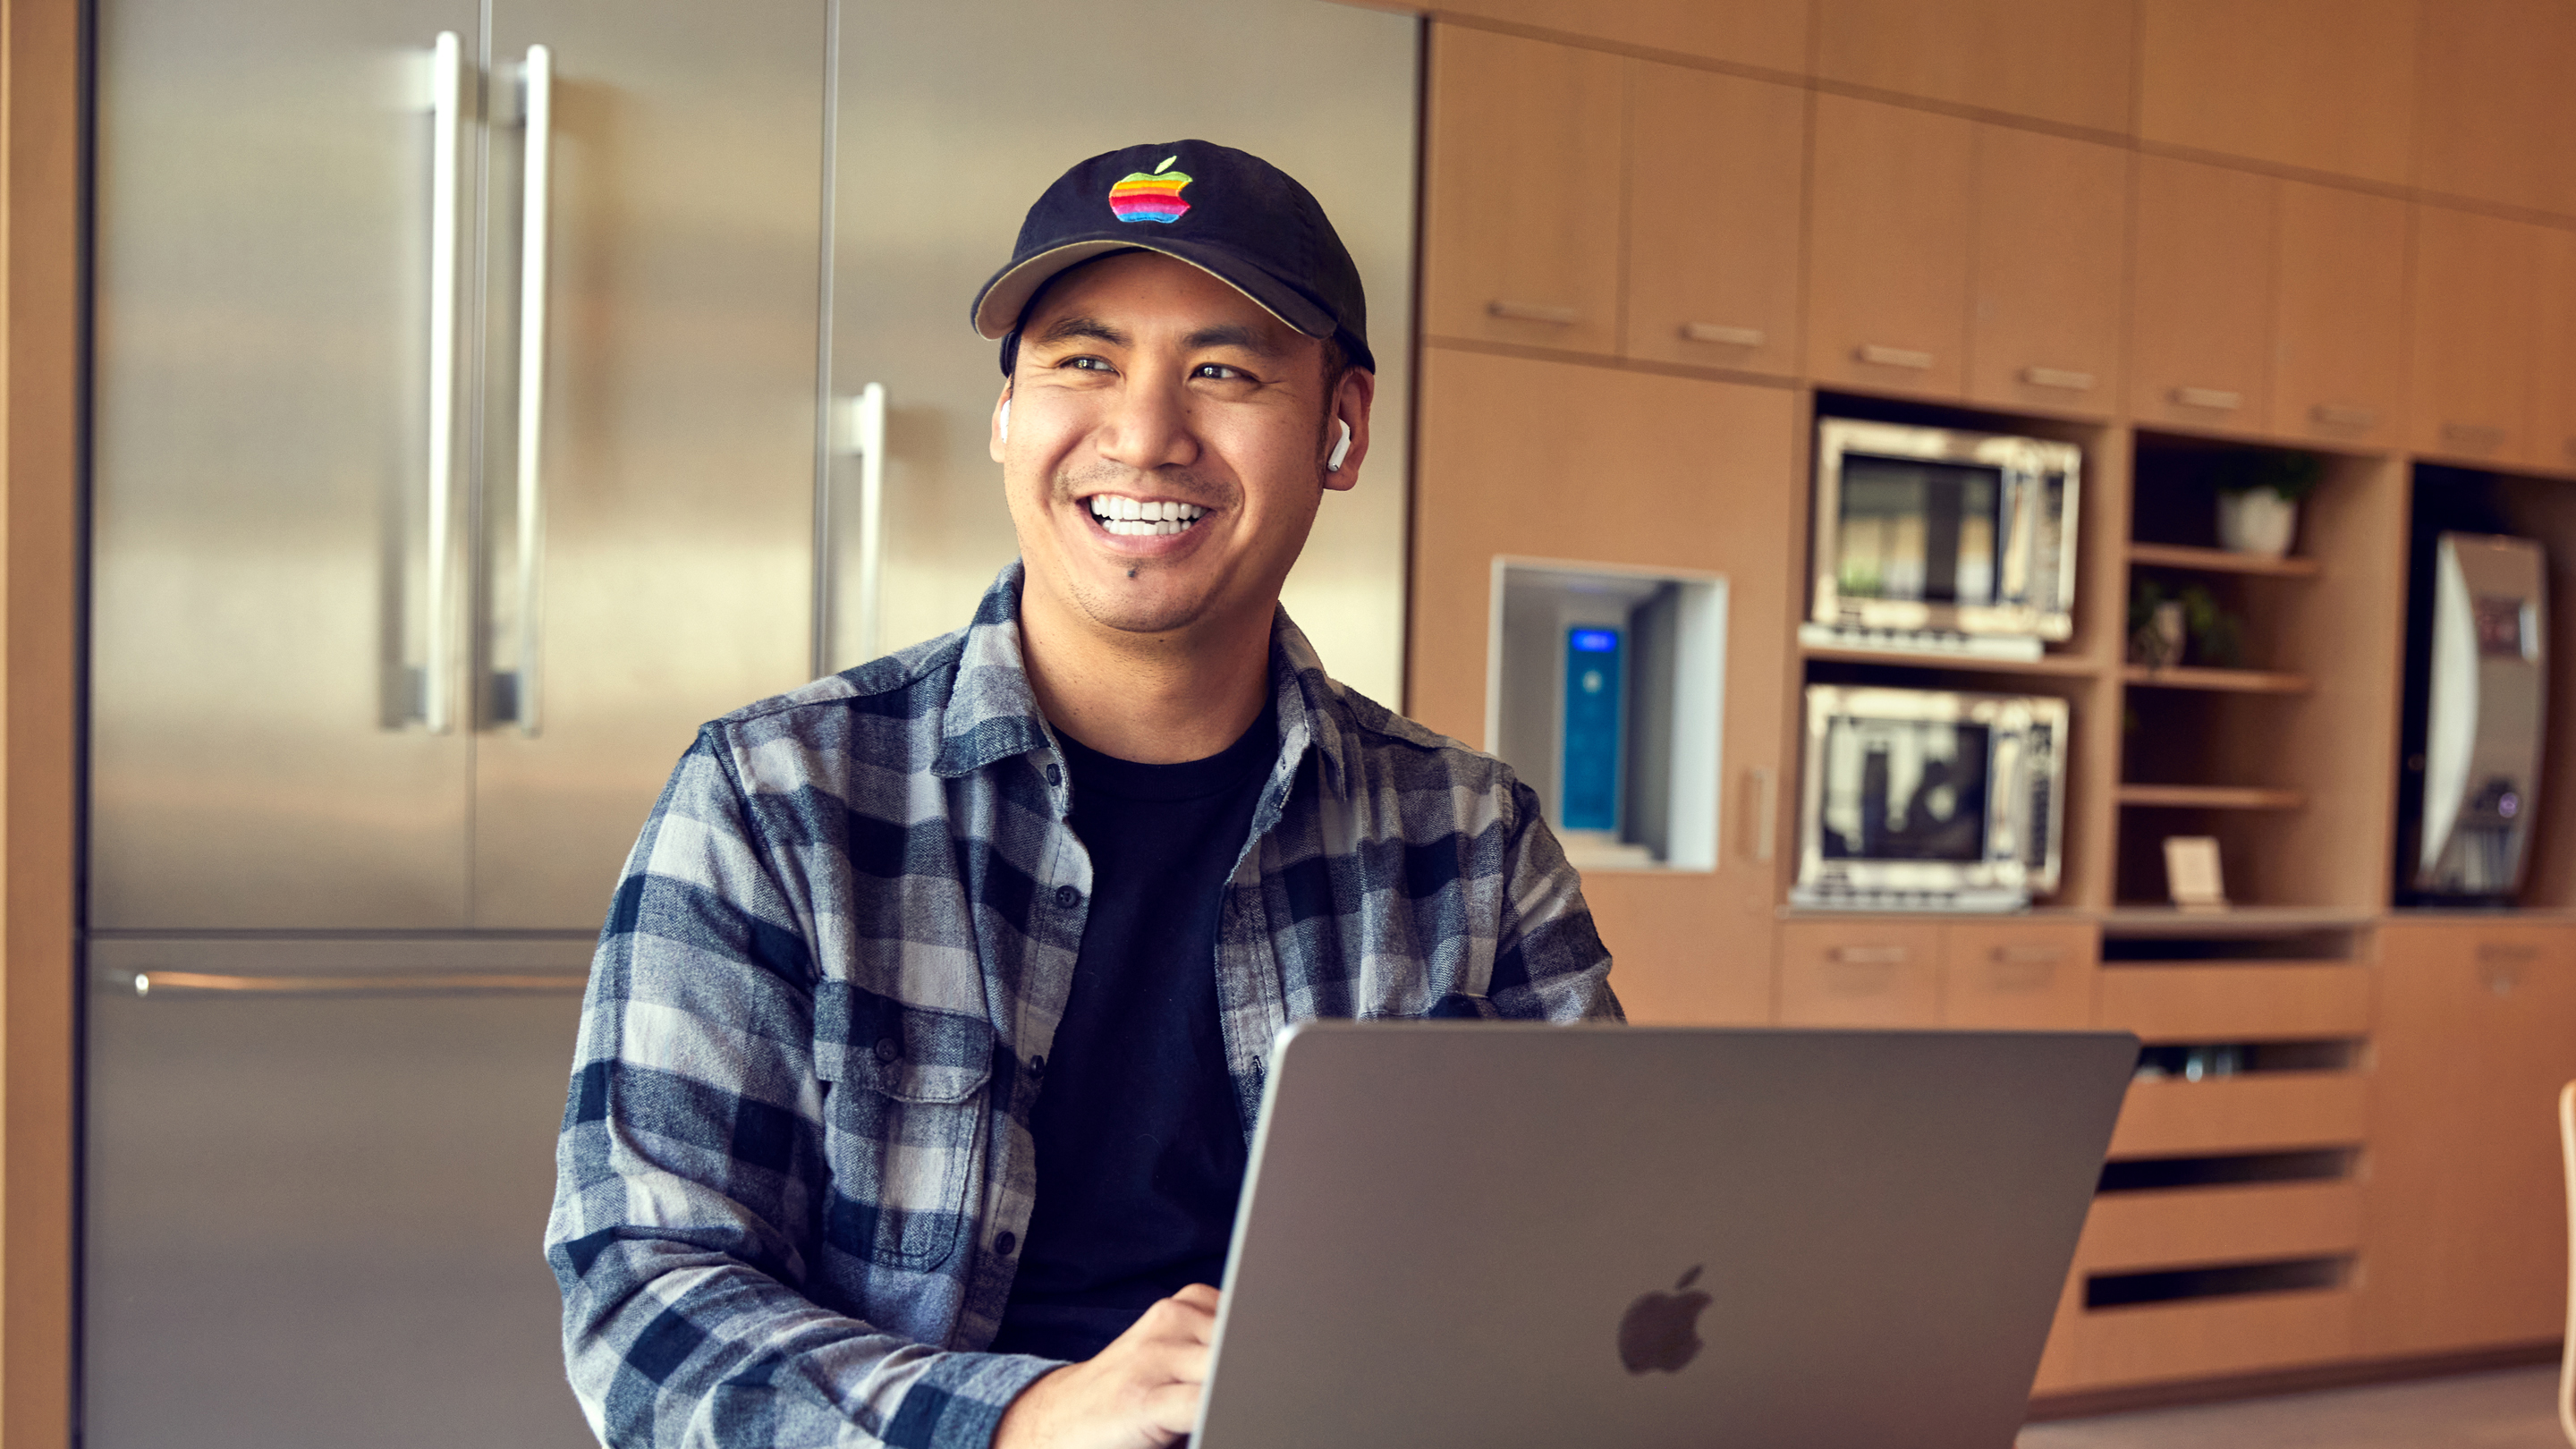 Una persona que trabaja en Apple San Diego sonriendo y trabajando en su laptop.